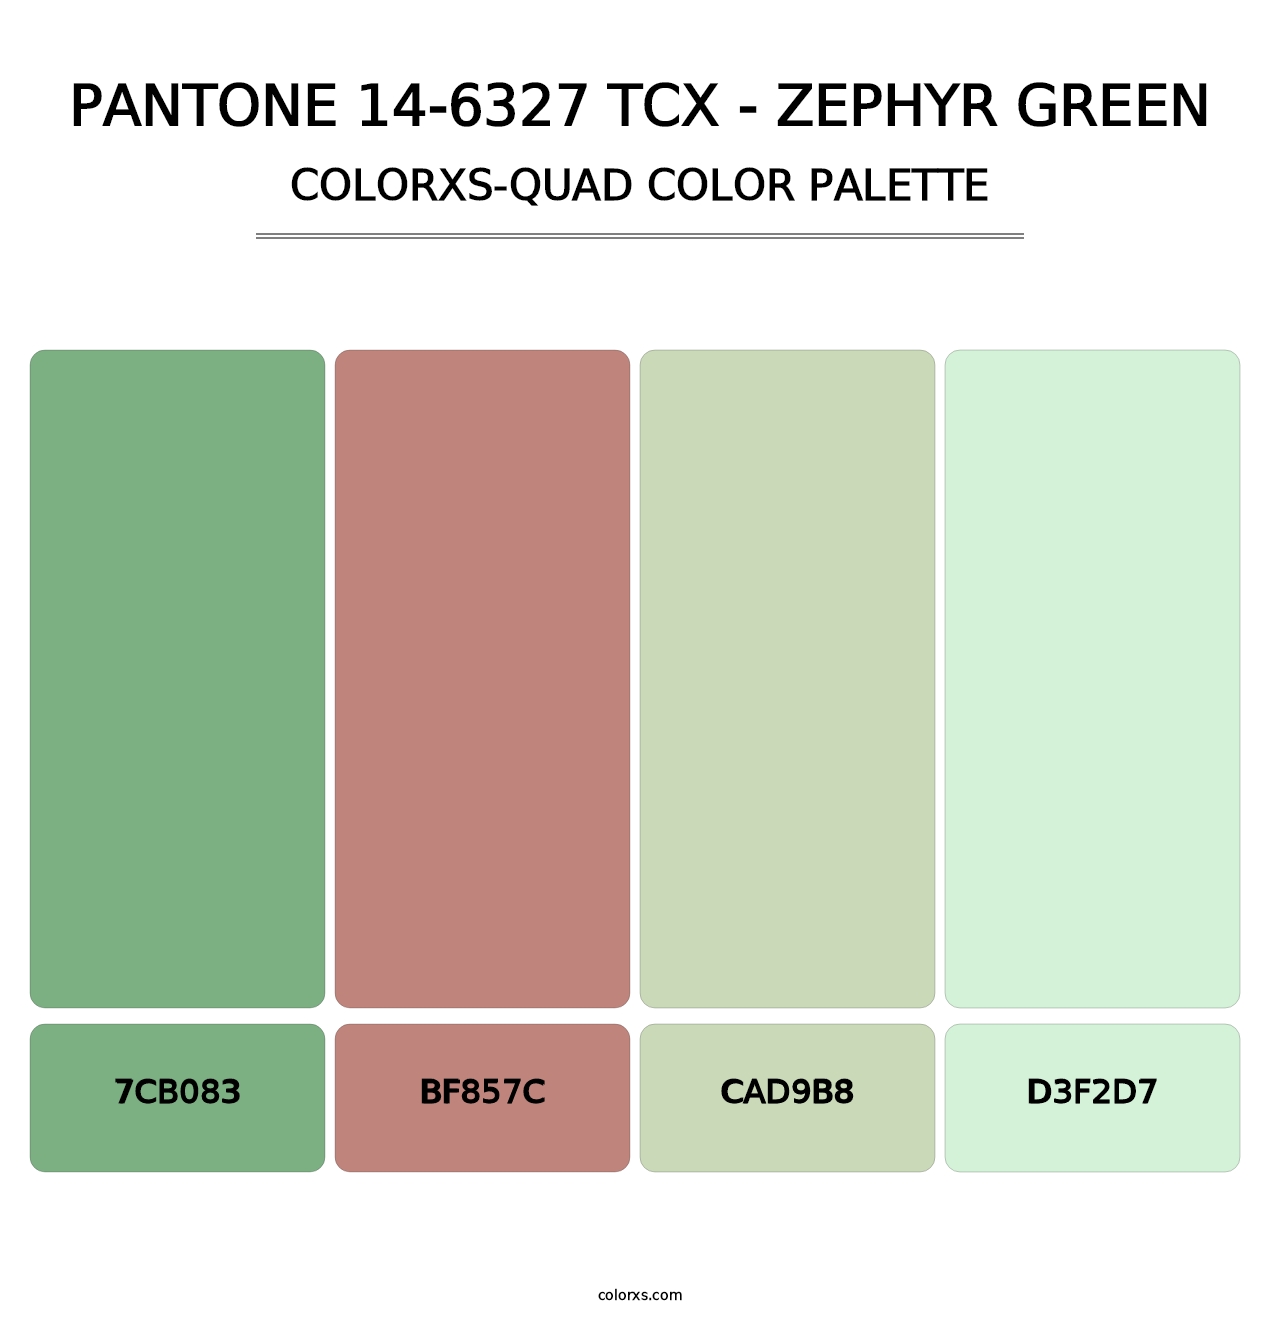 PANTONE 14-6327 TCX - Zephyr Green - Colorxs Quad Palette